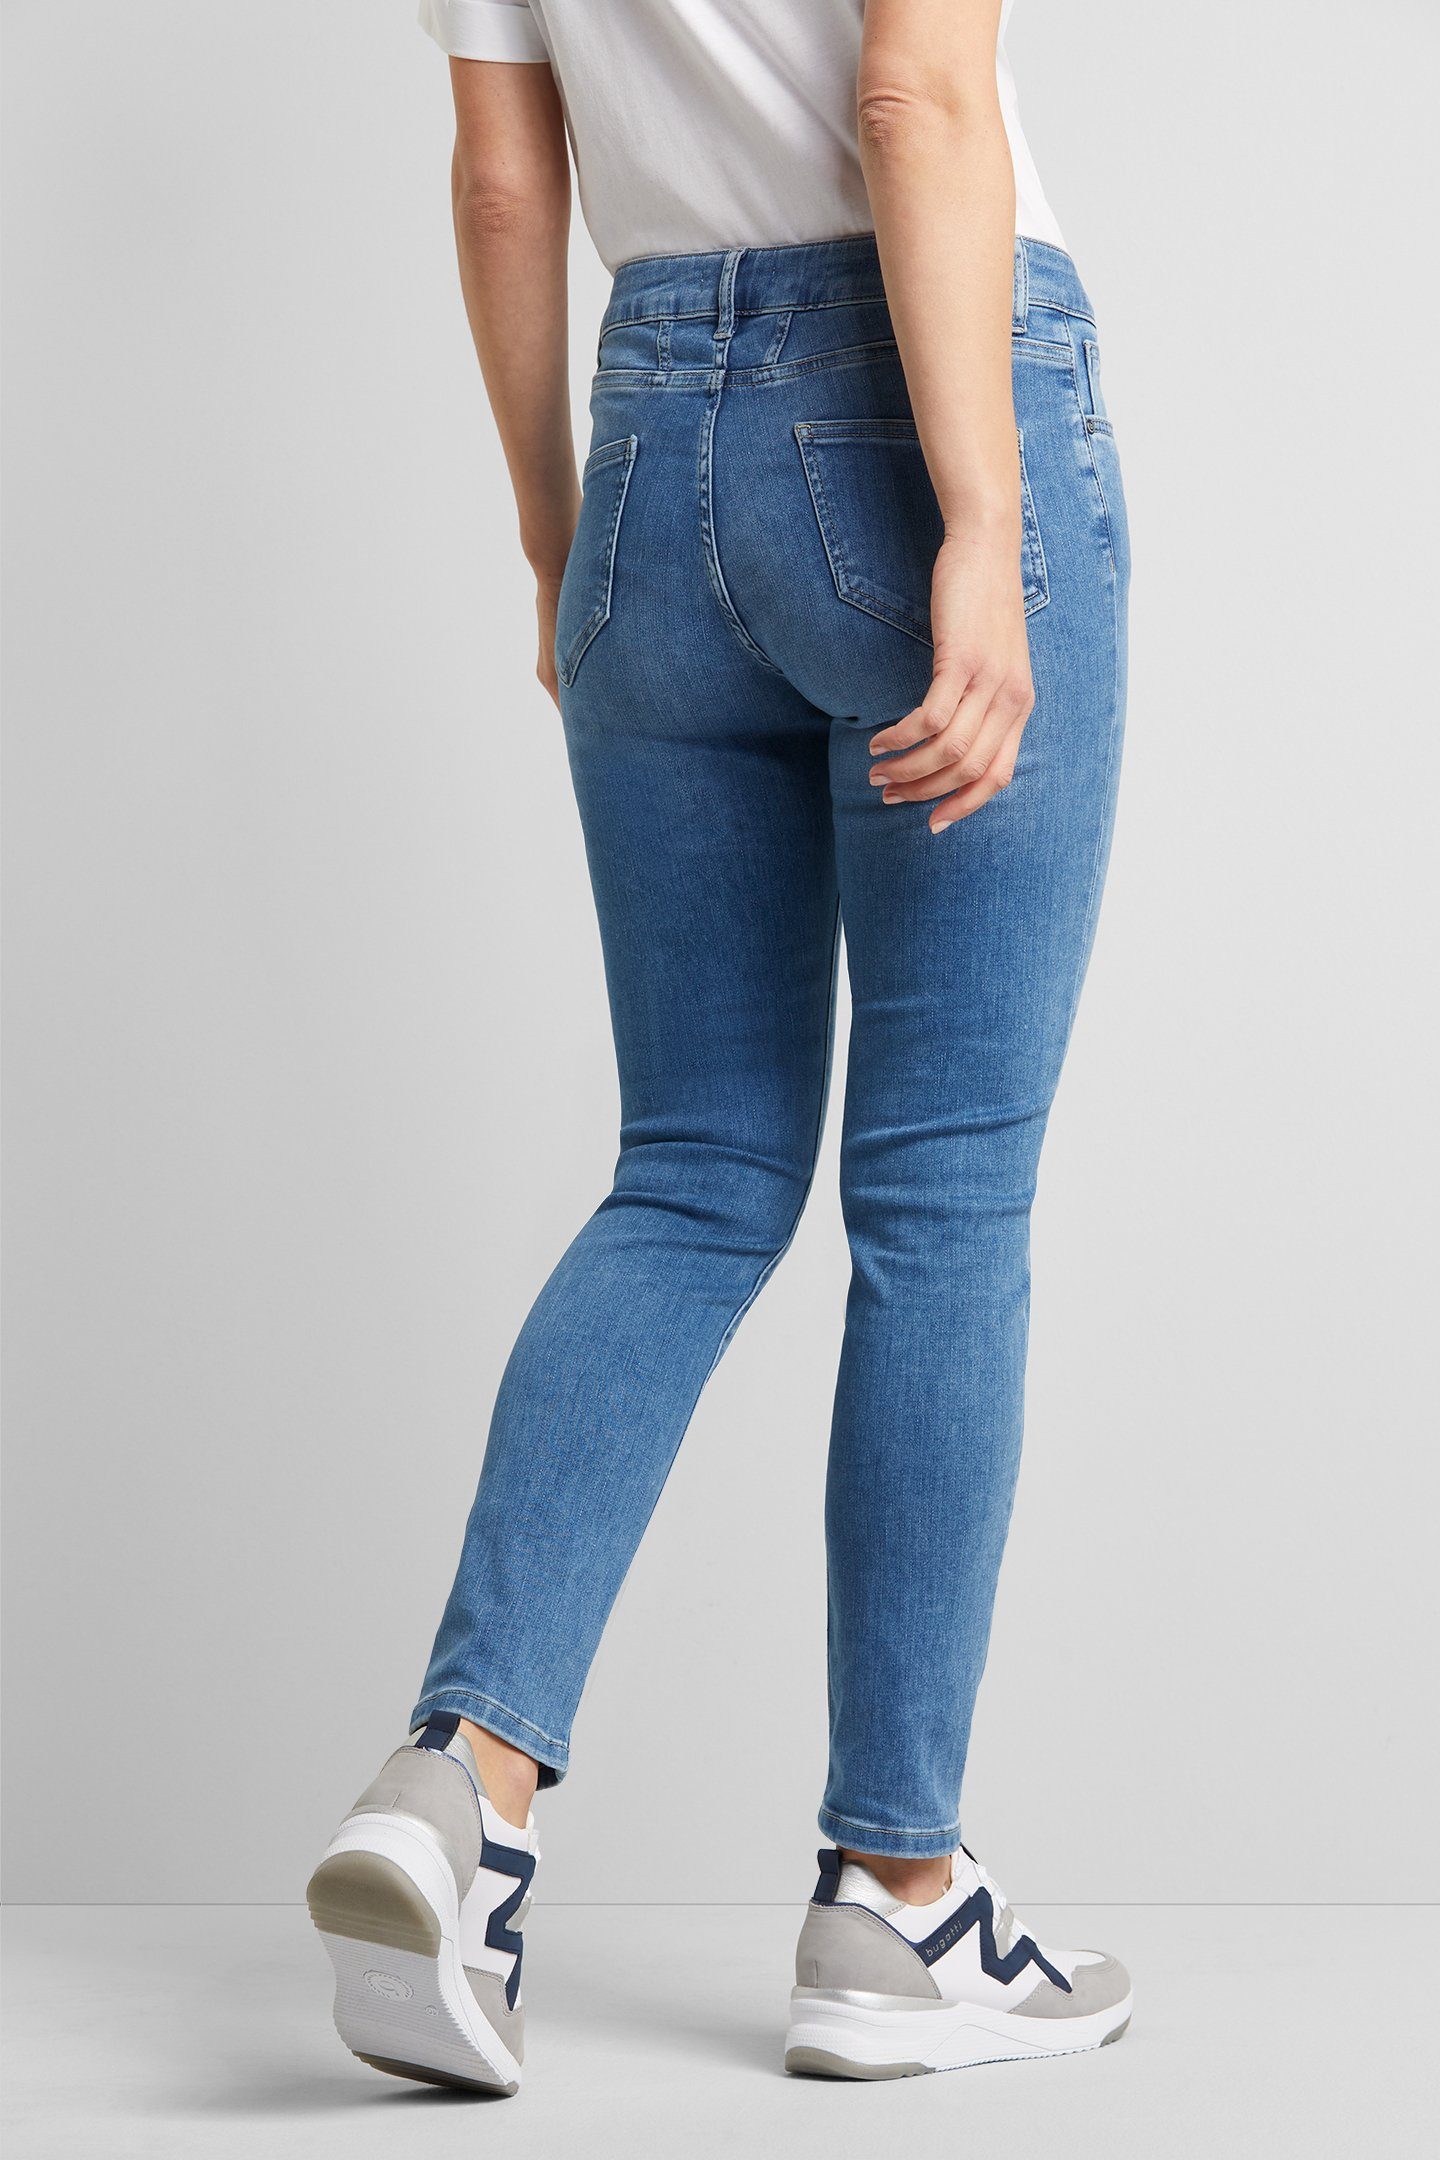 Optik bugatti einer in hellblau coolen 5-Pocket-Jeans